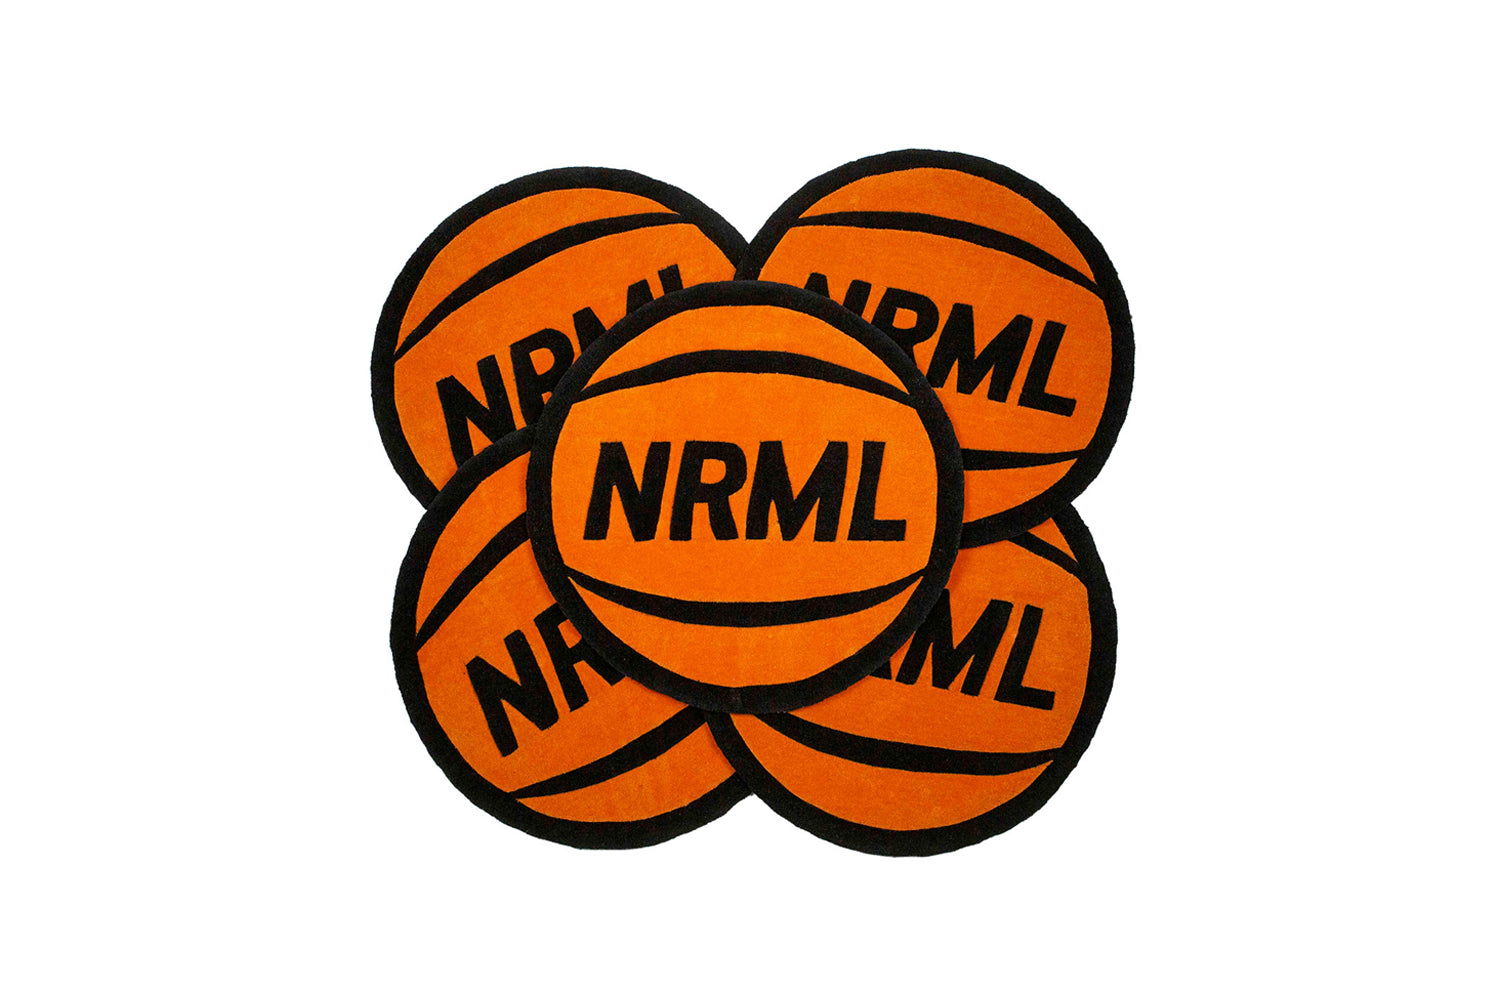 NRML BASKETBALL RUG